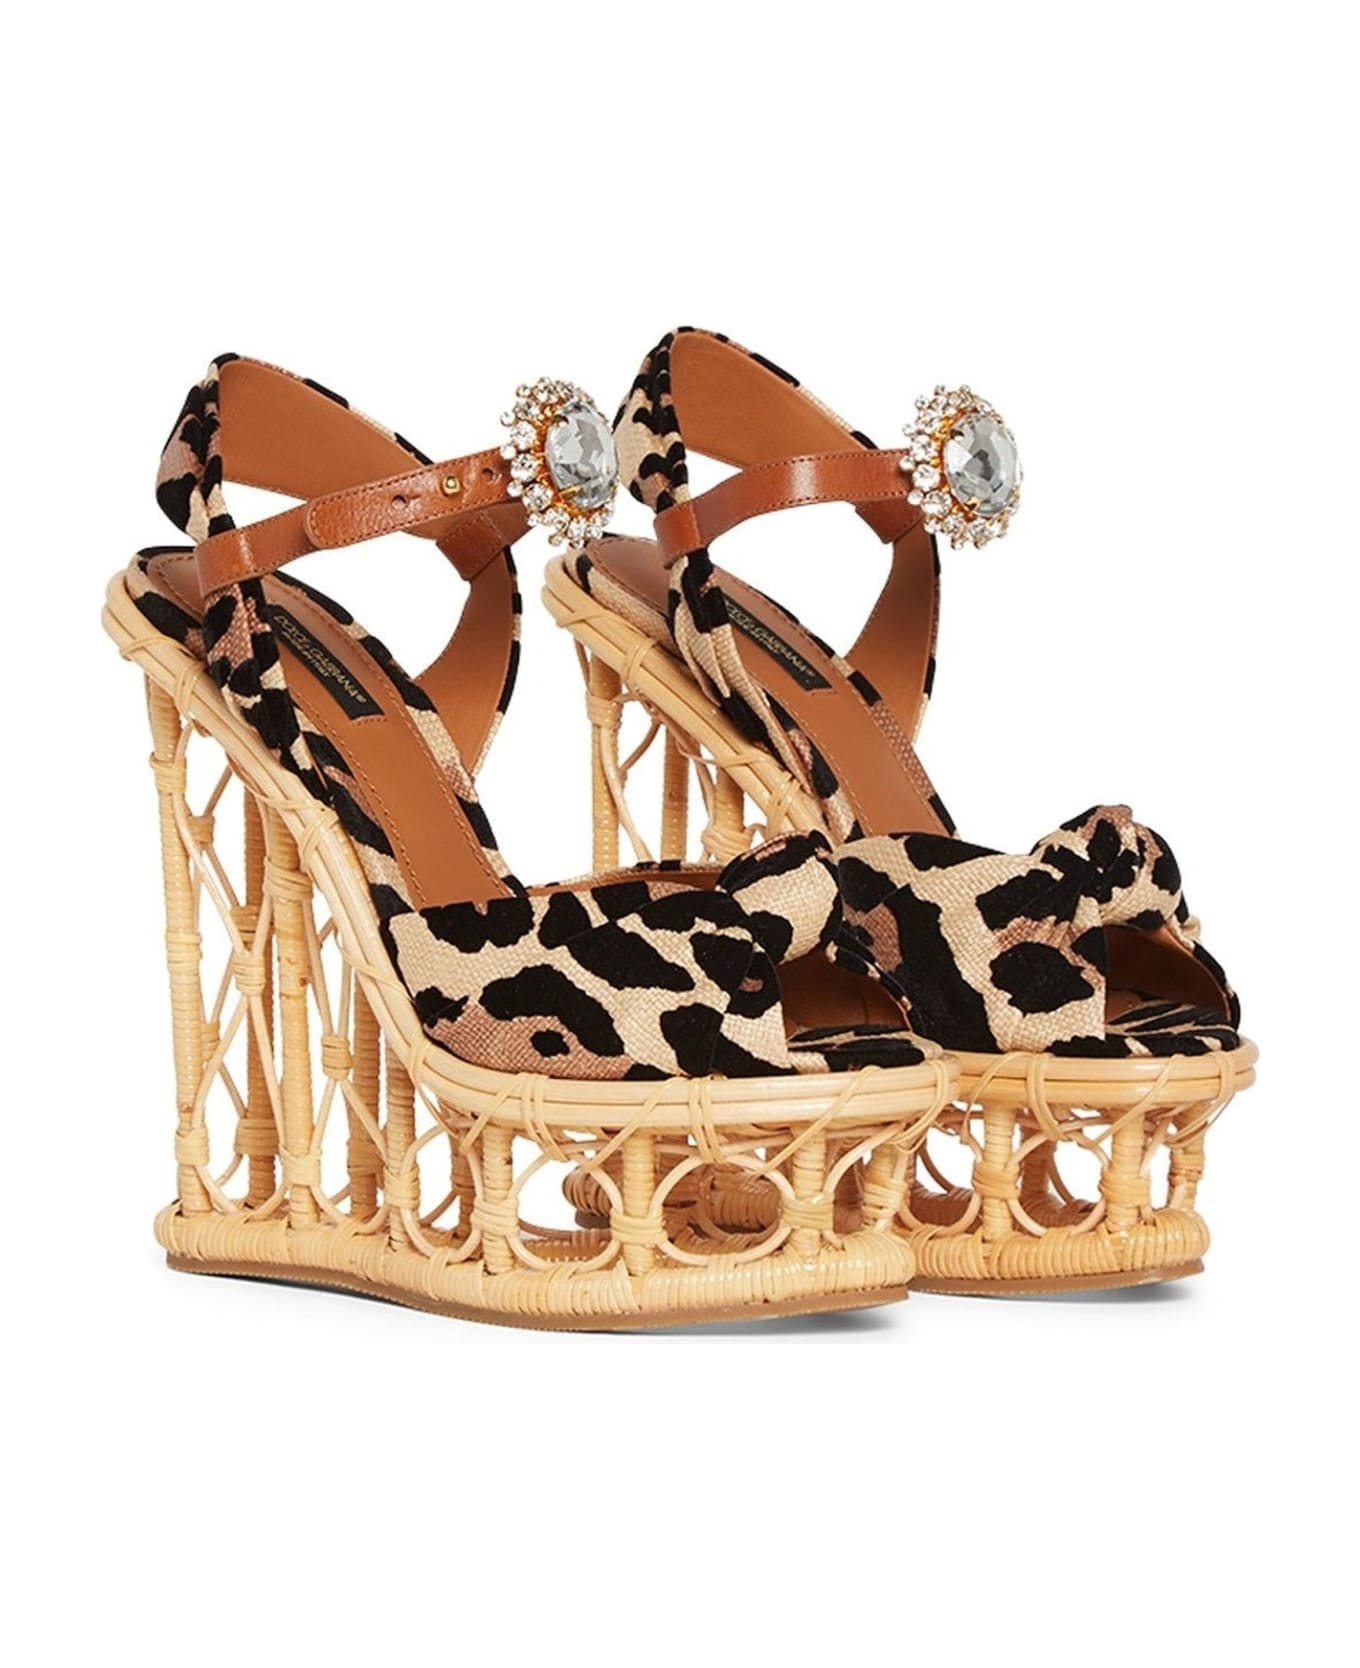 Dolce & Gabbana Wedge Sandals - Beige